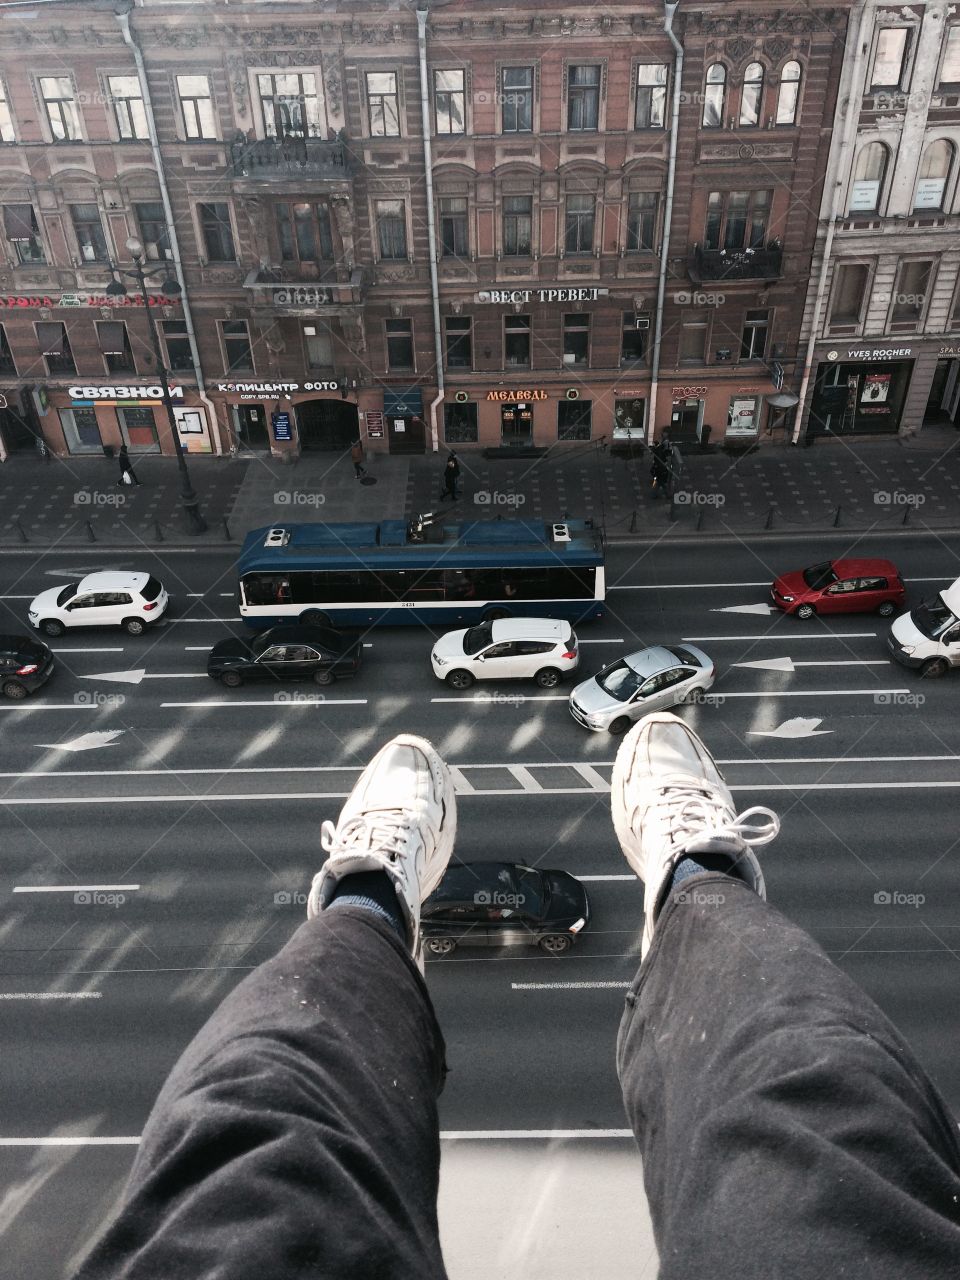 Spb roof, Nevsky 